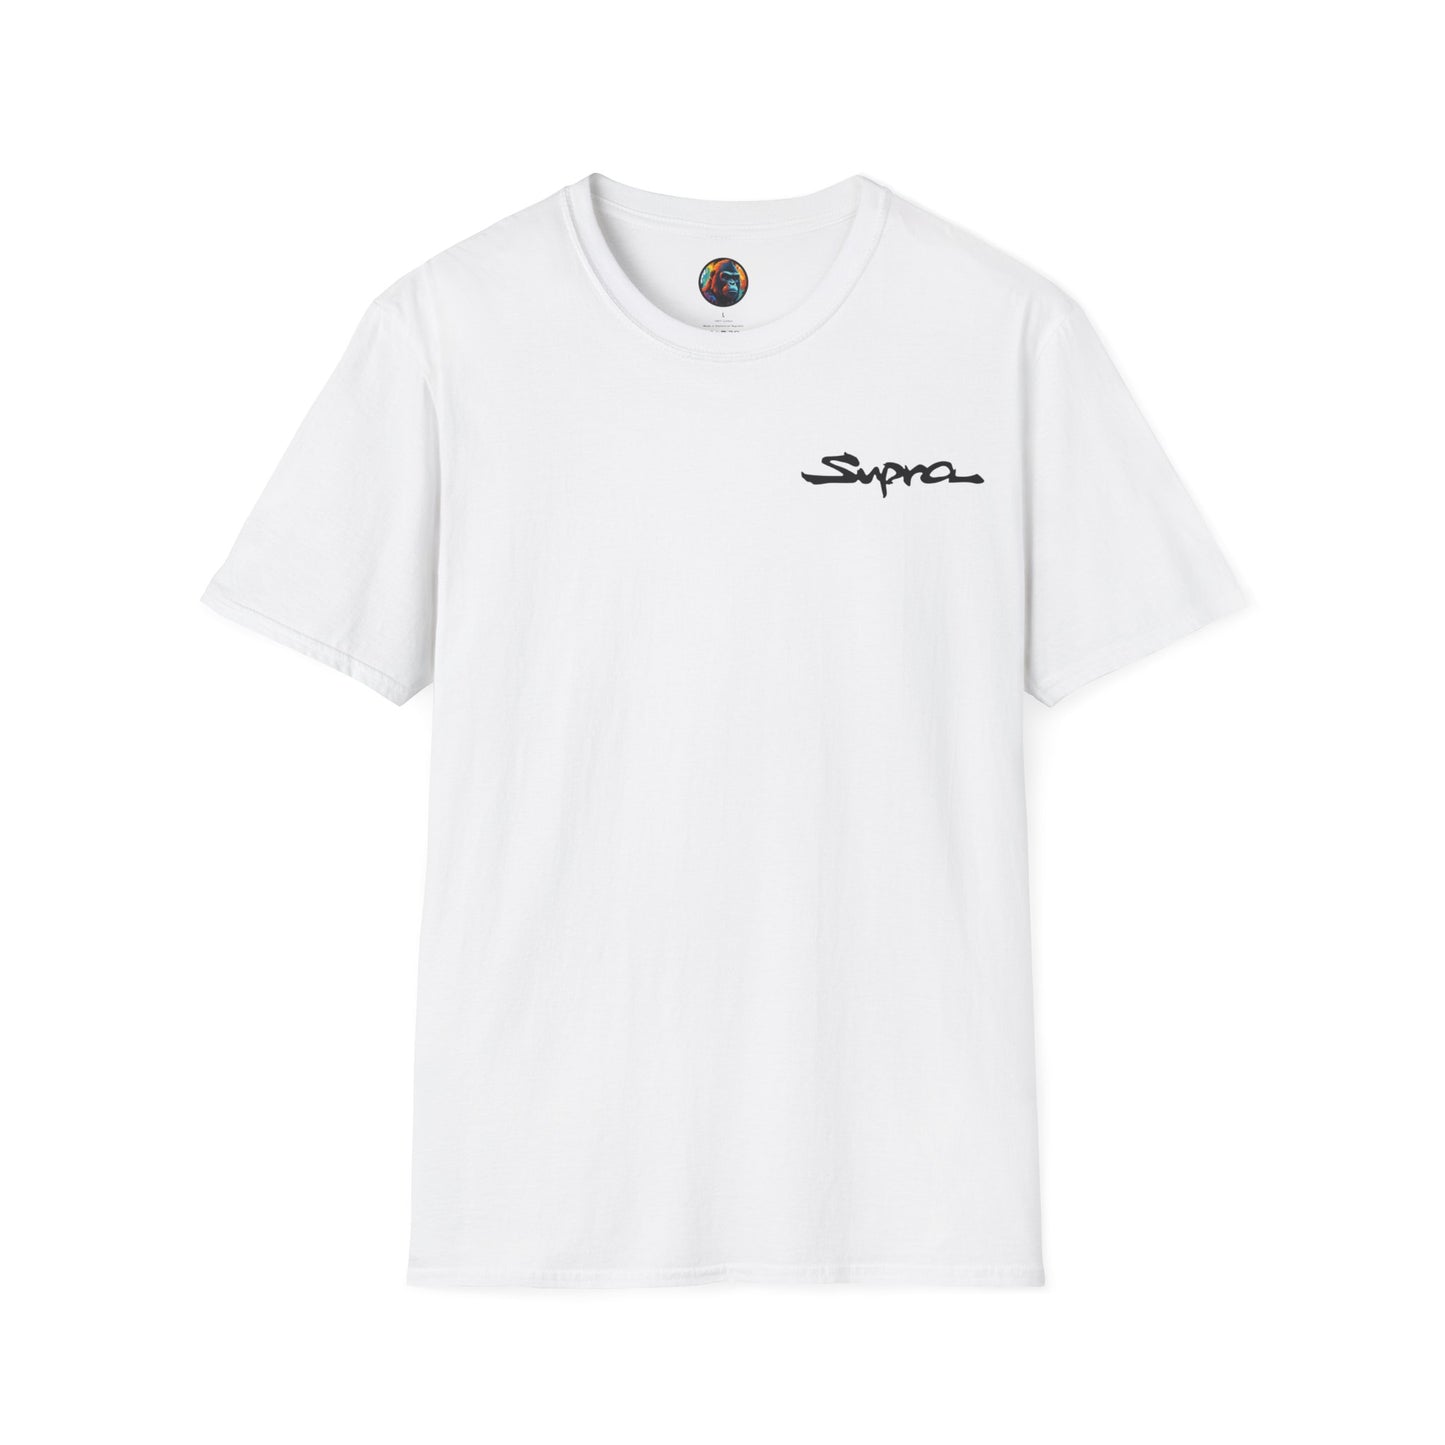 Toyota Supra Graffiti Unisex Softstyle T-Shirt